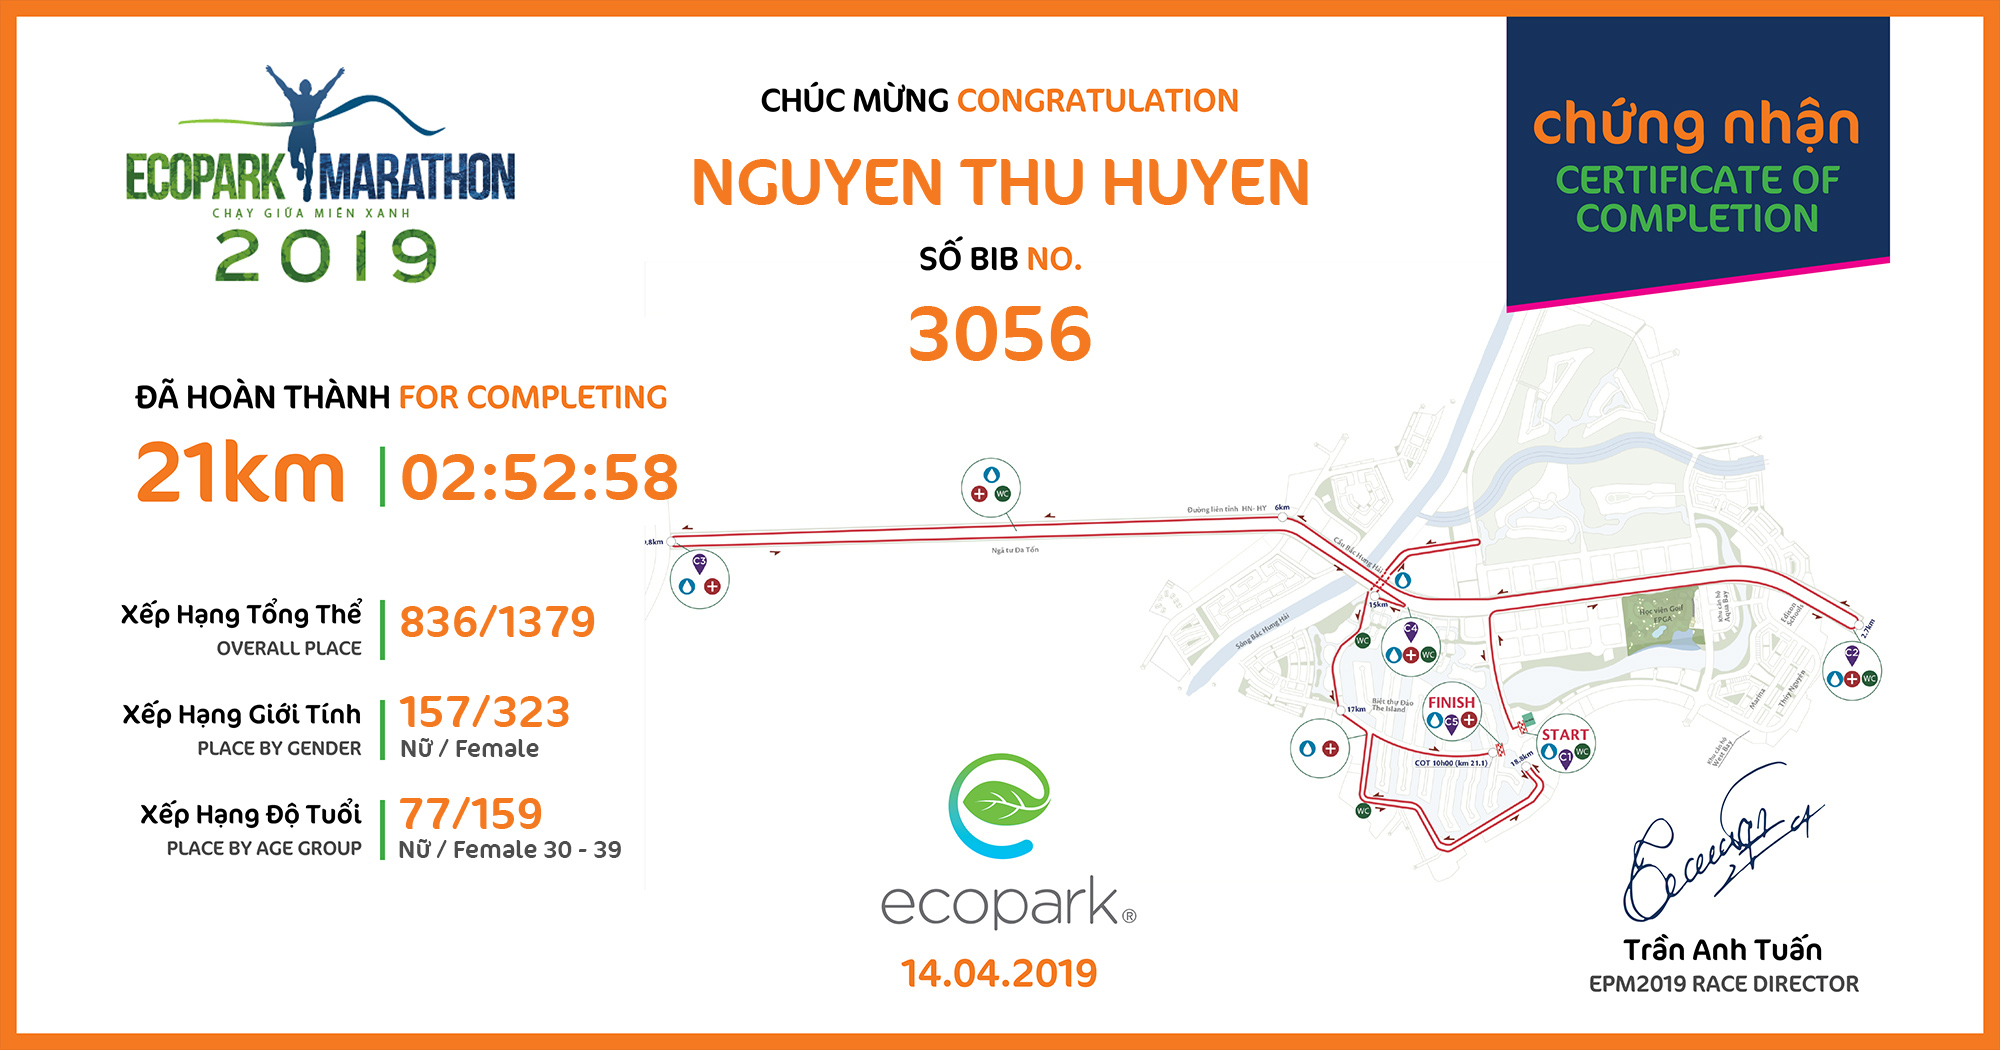 3056 - Nguyen Thu Huyen